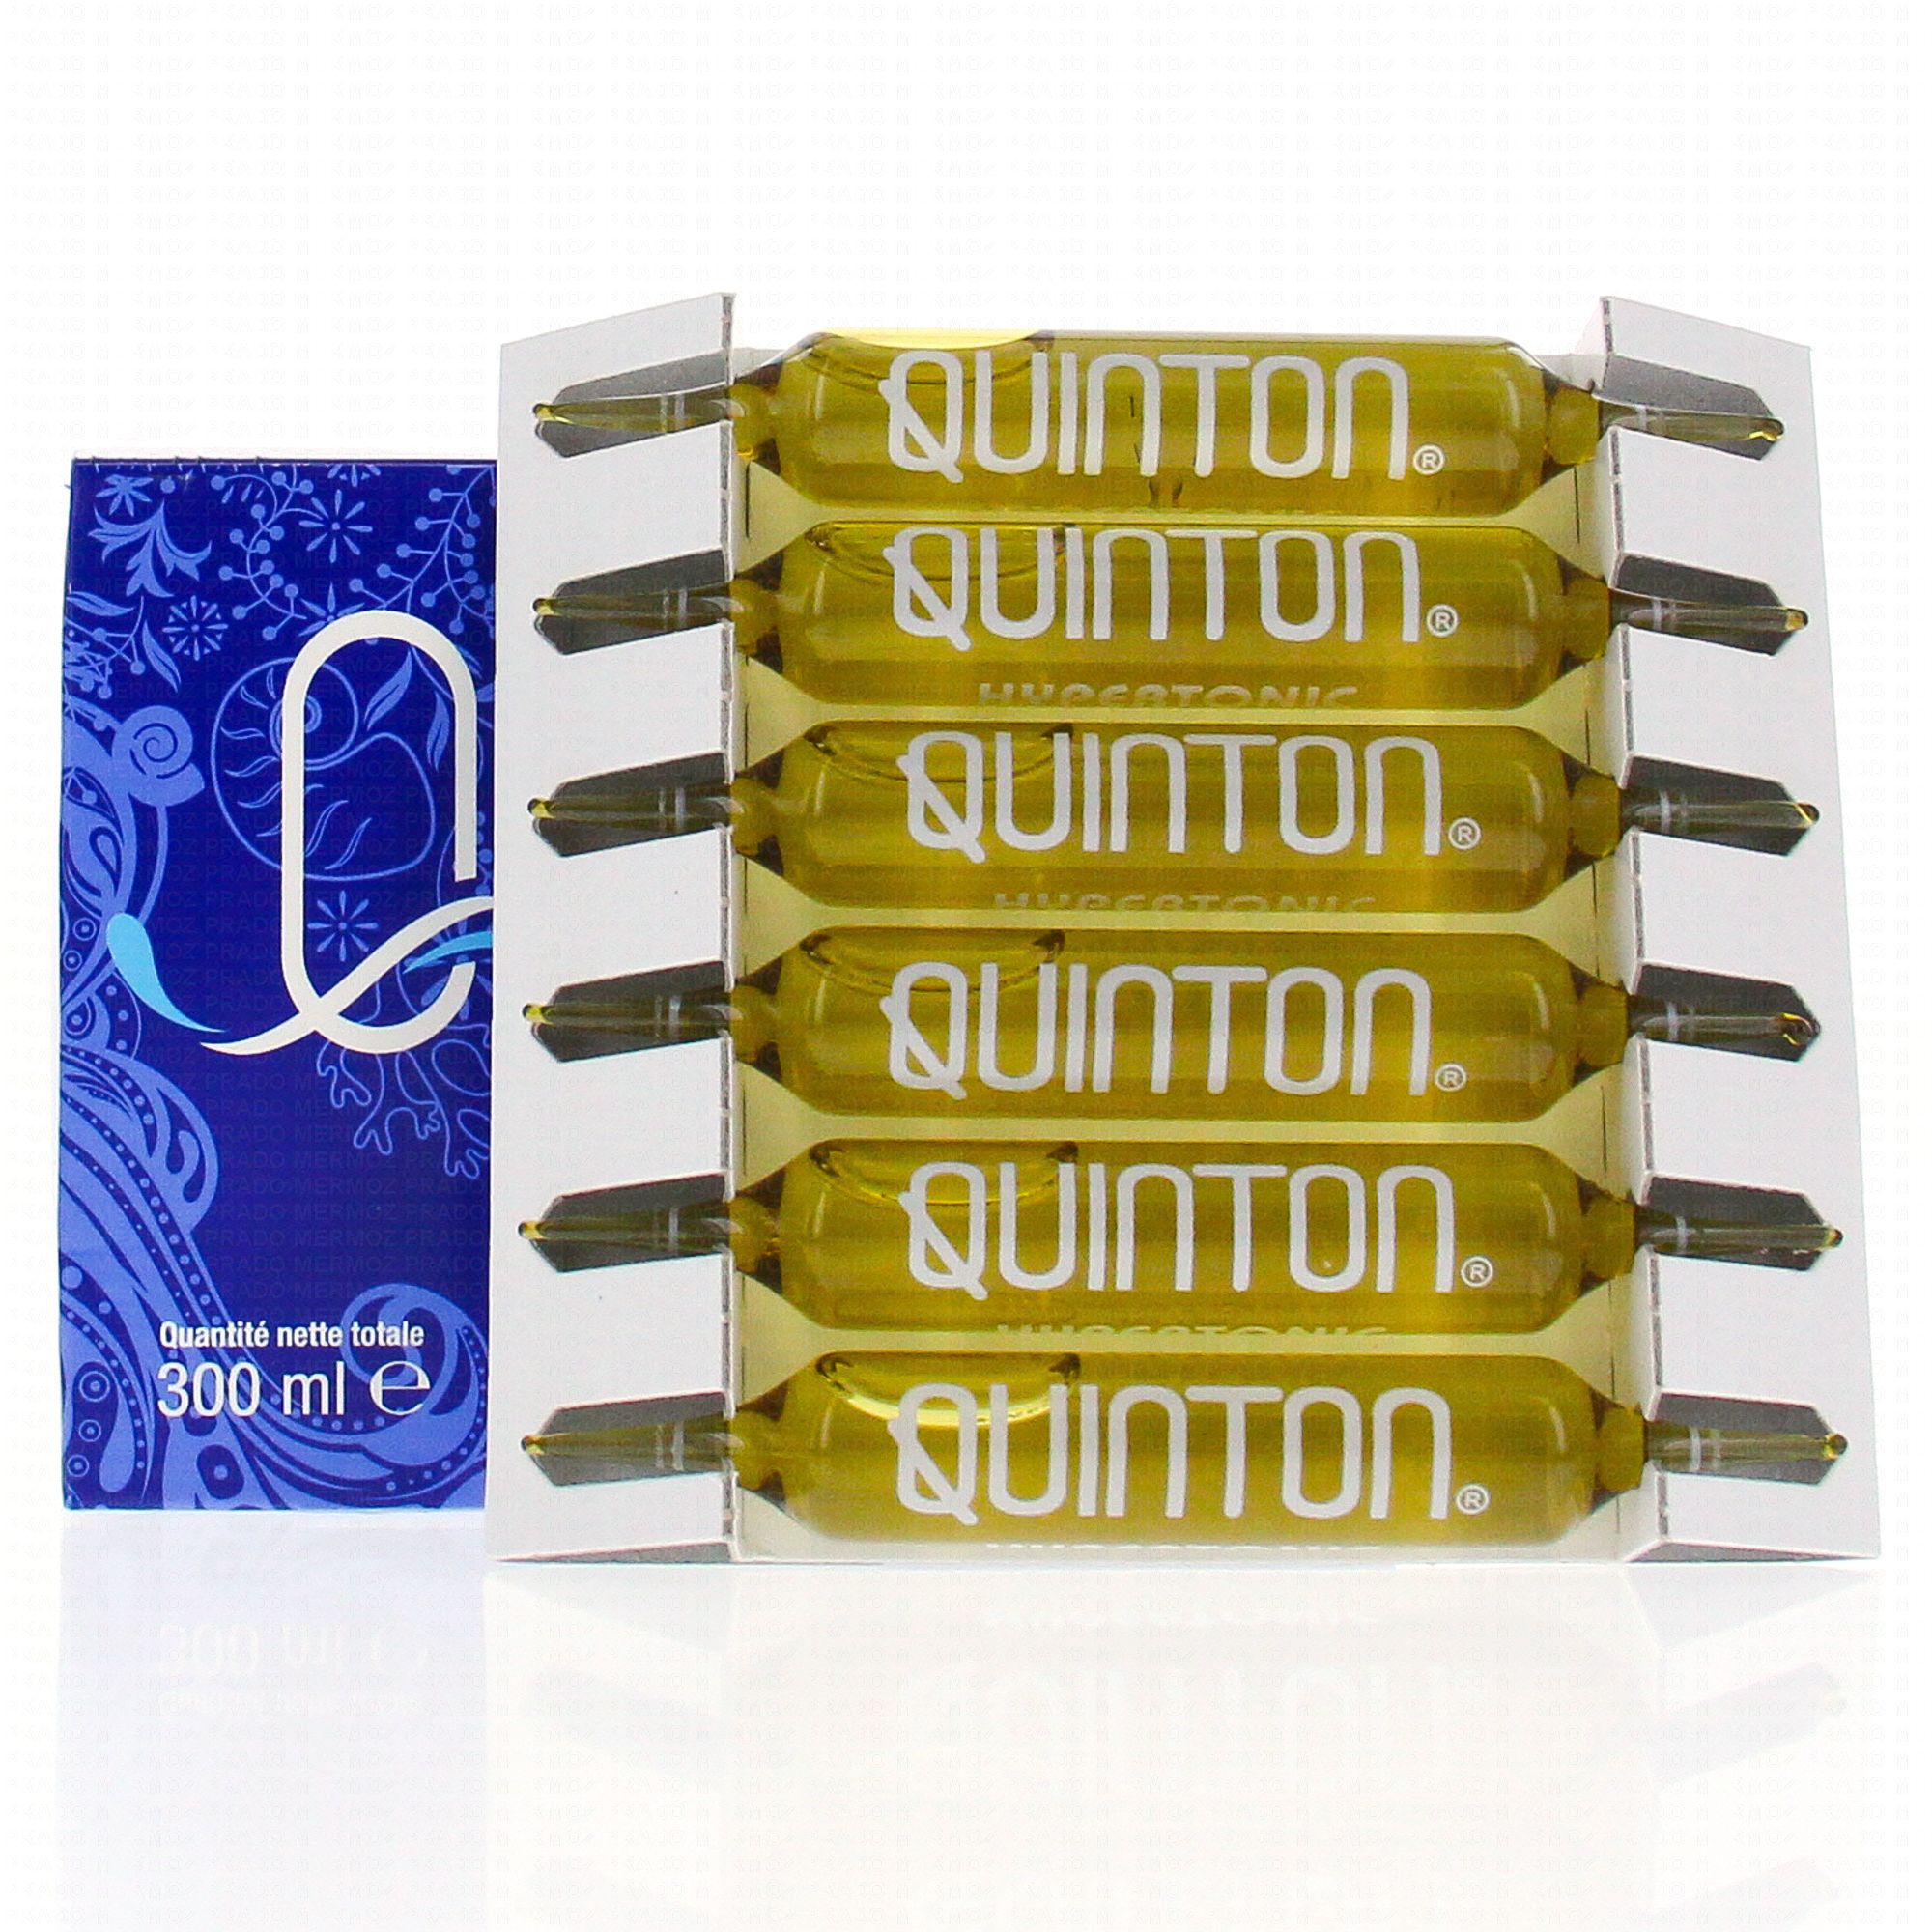 Quinton hypertonic - 30 ampoules - Pharmacie en ligne